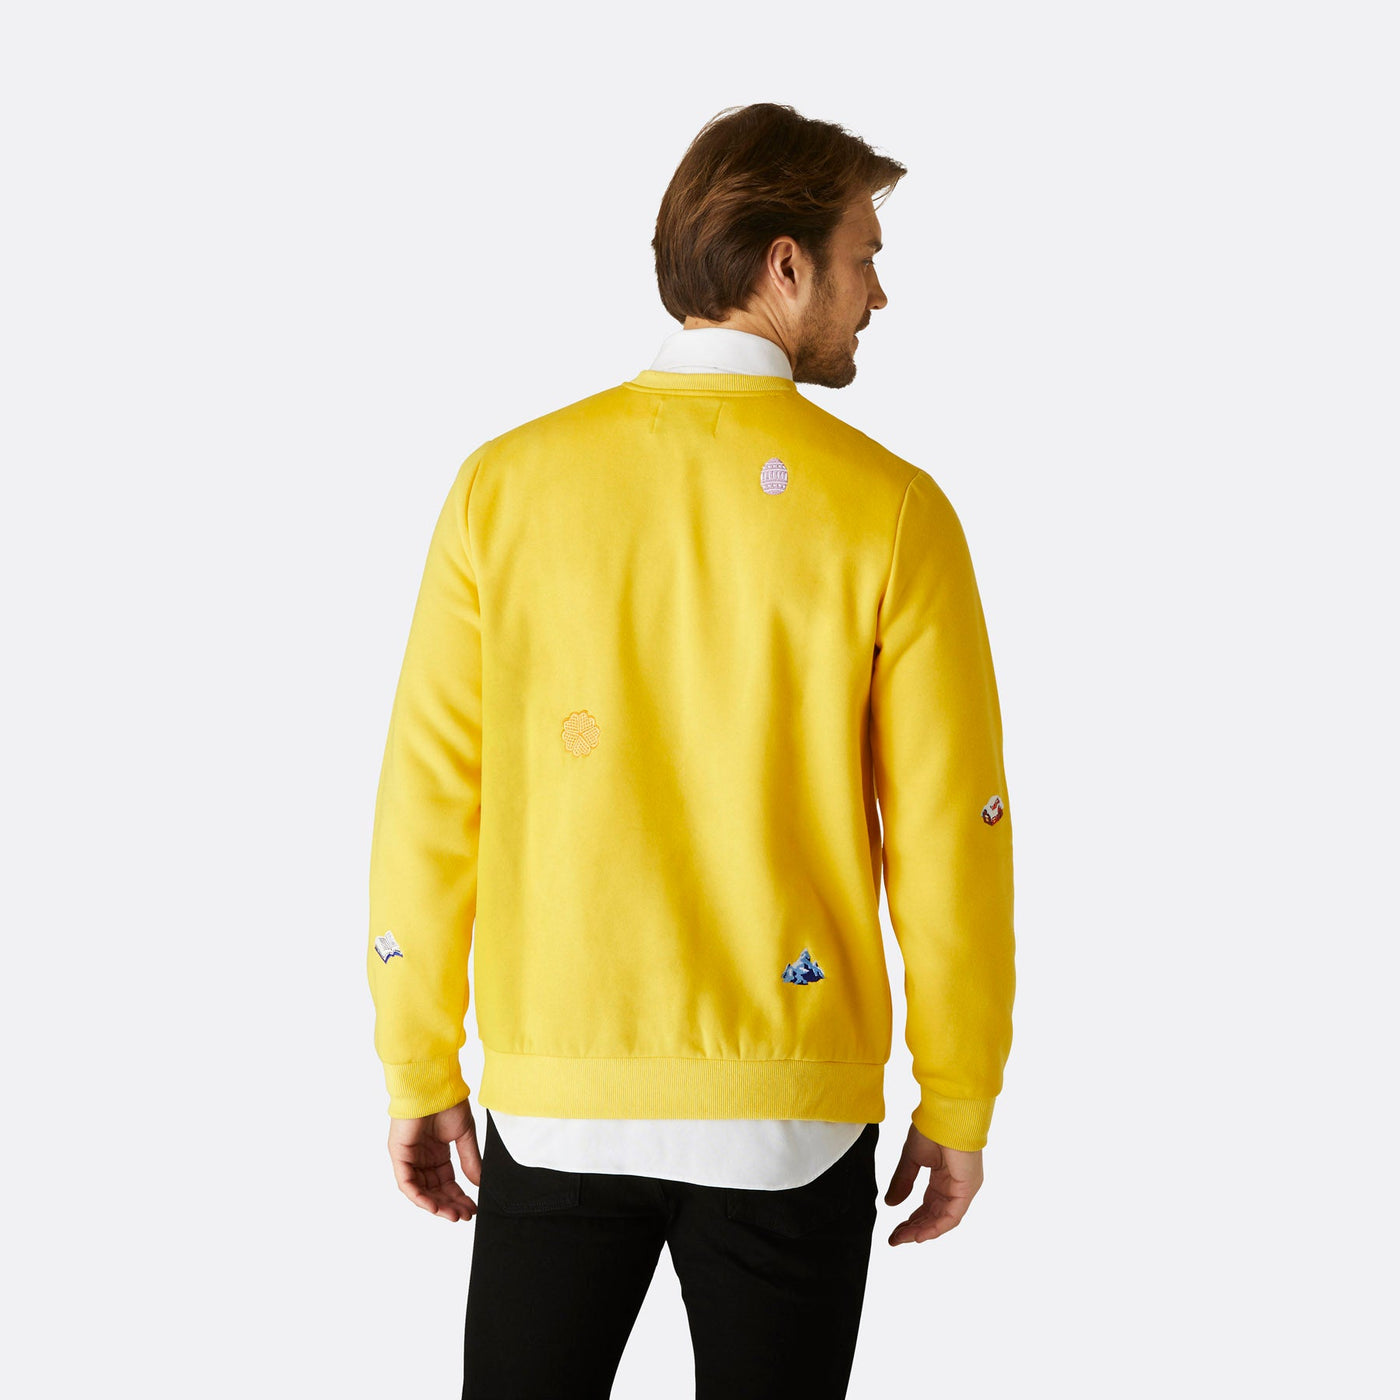 Men's Yellow Easter Sweatshirt